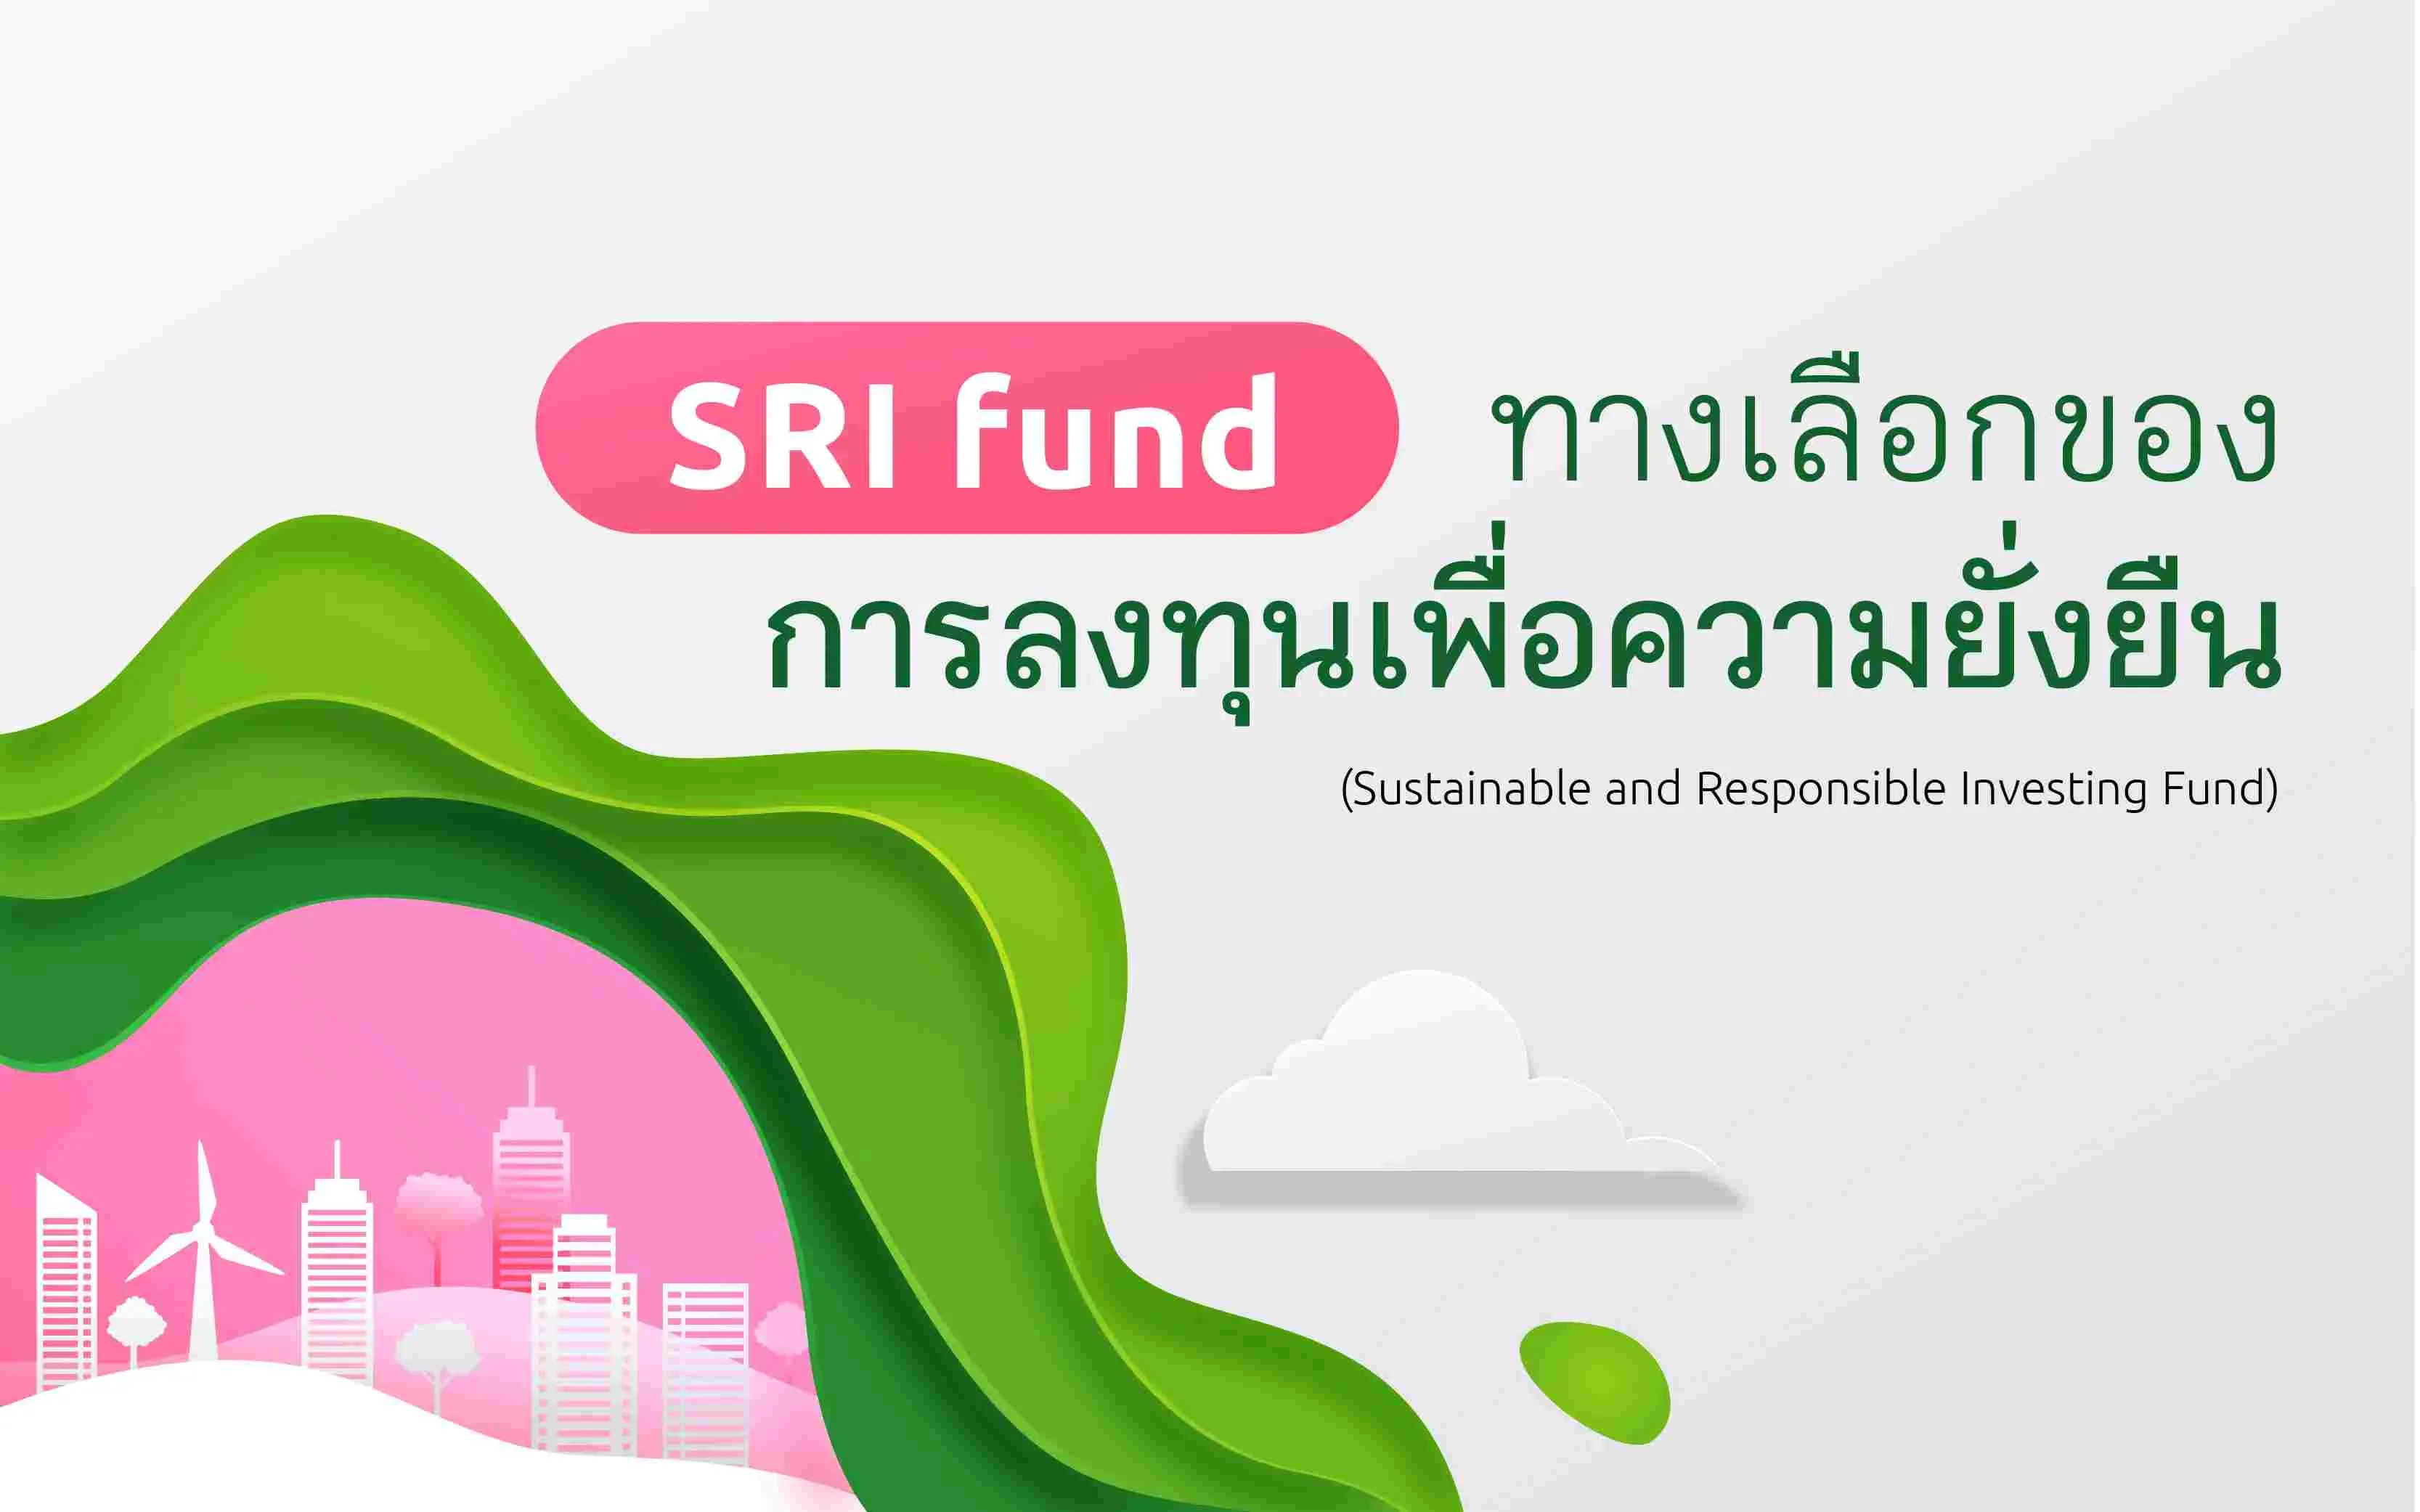 Sri Fund ทางเลือกของการลงทุนเพื่อความยั่งยืน